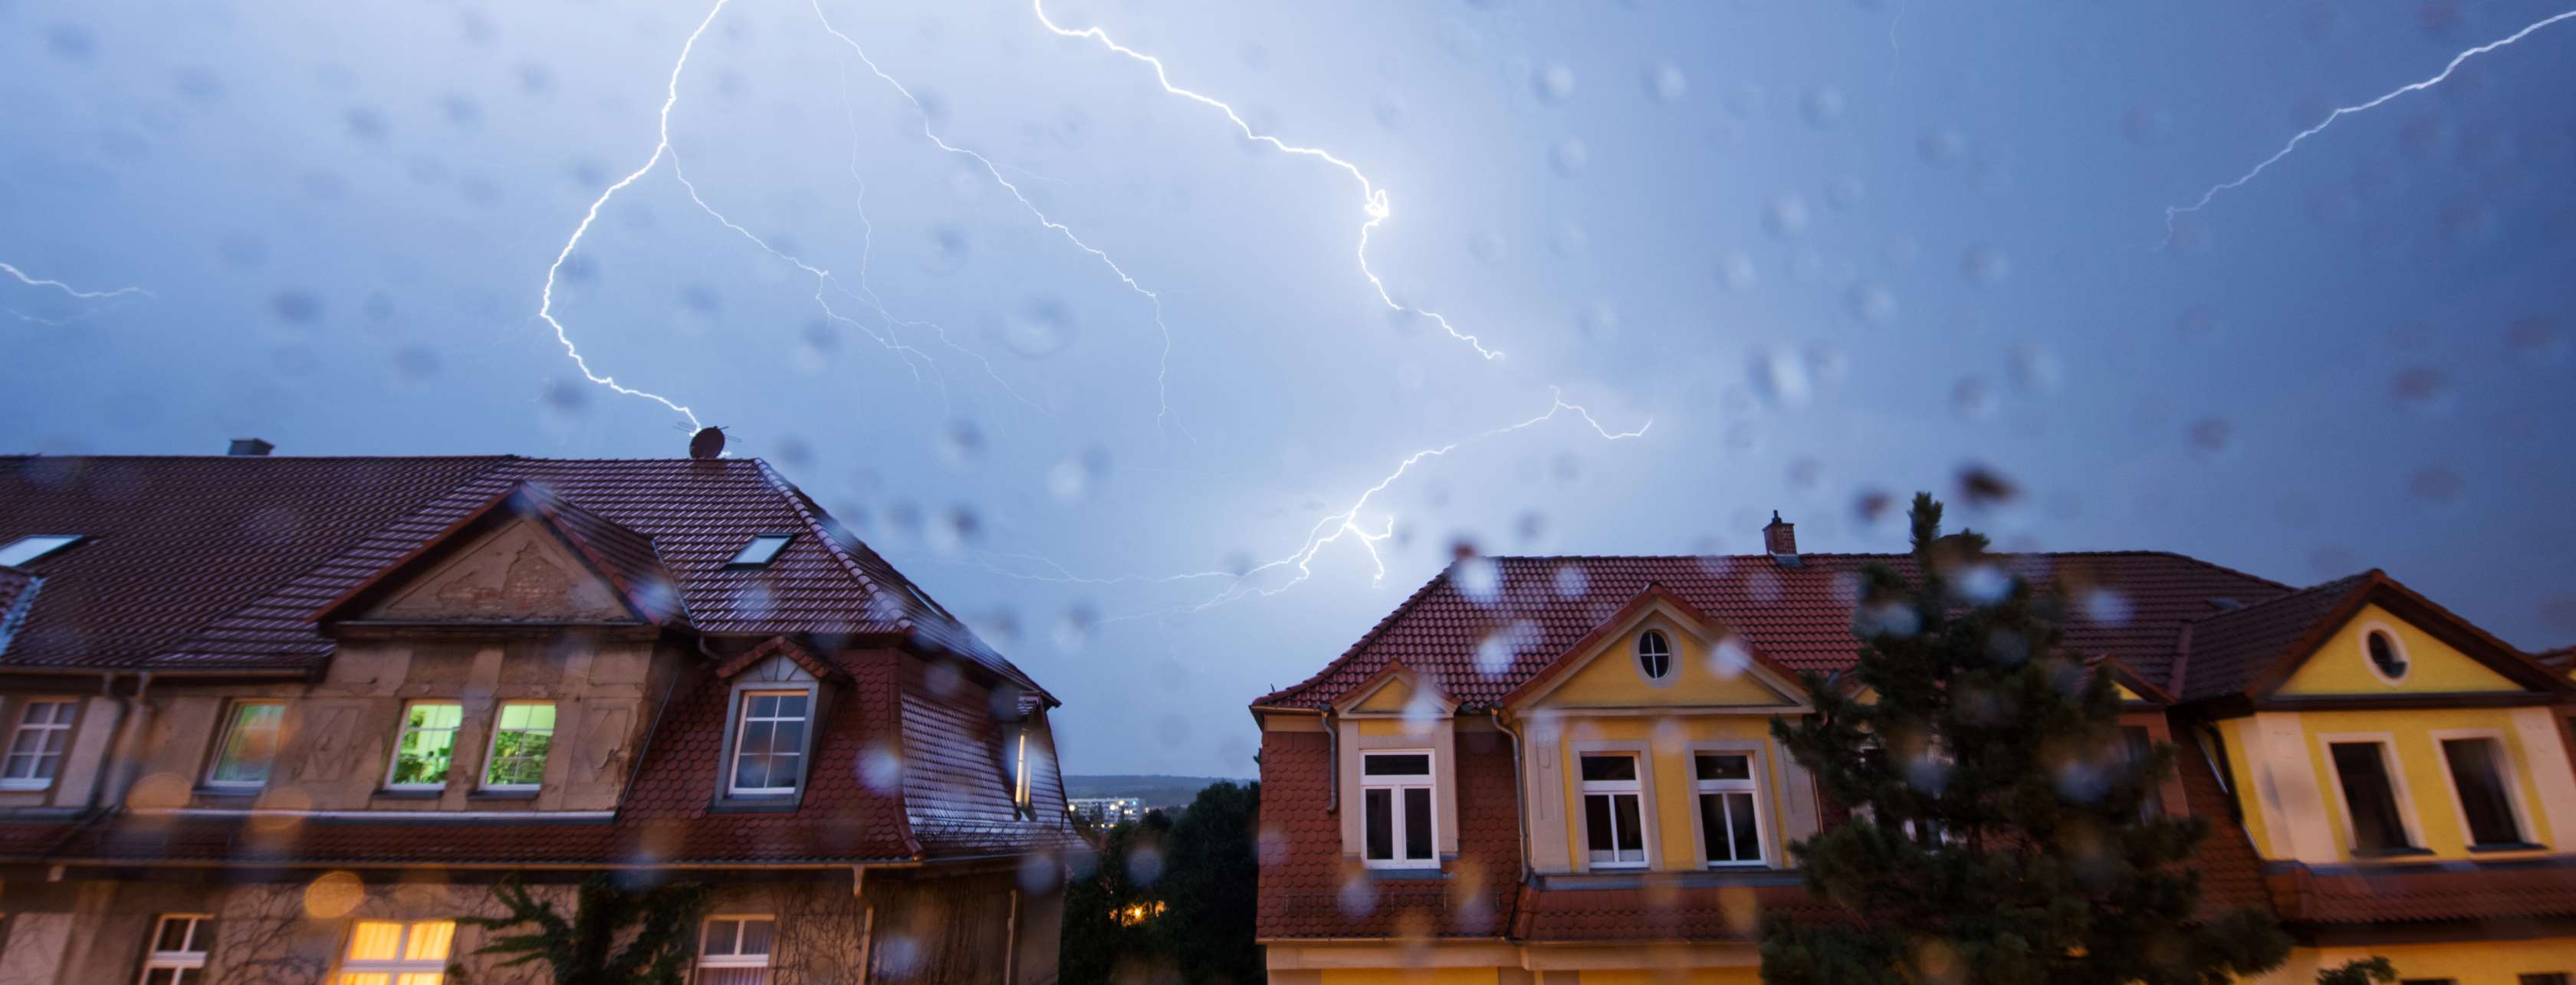 Vor Blitzeinschlag schützen: Blitze sind am Himmel über zwei Häusern zu sehen